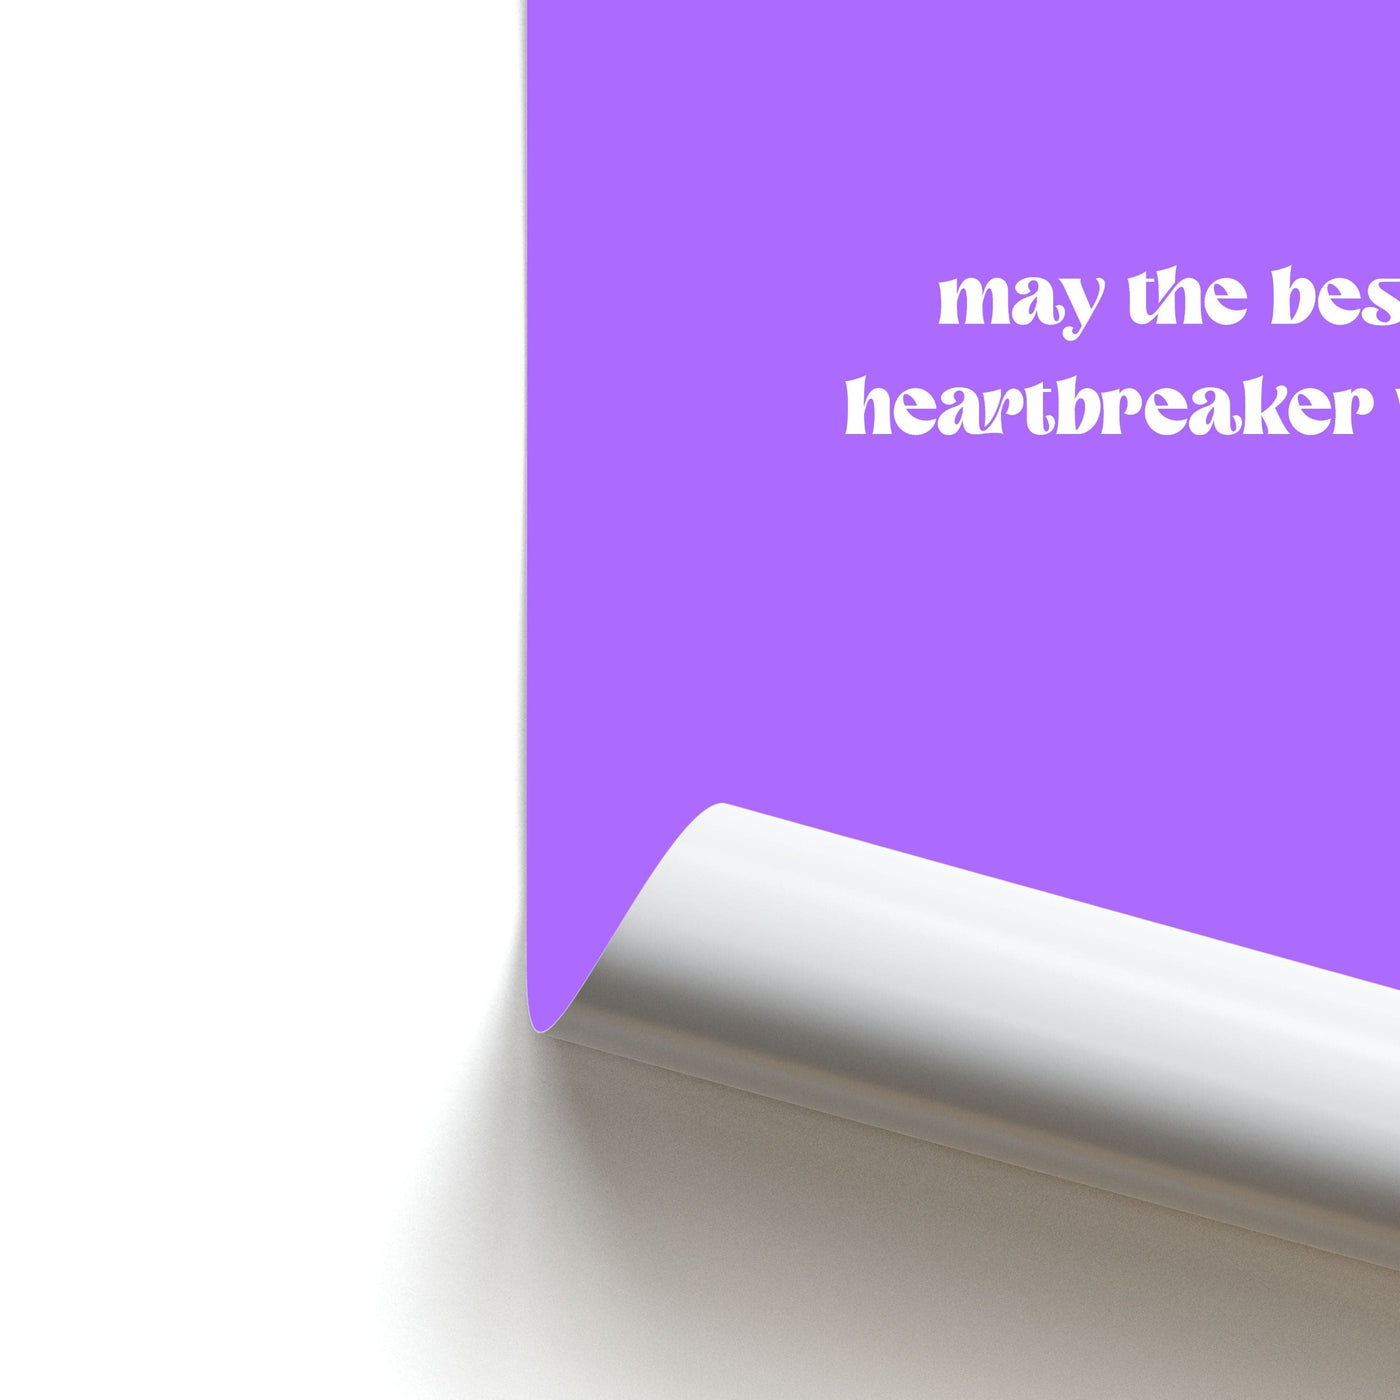 May The Best Heartbreaker Win - Islanders Poster